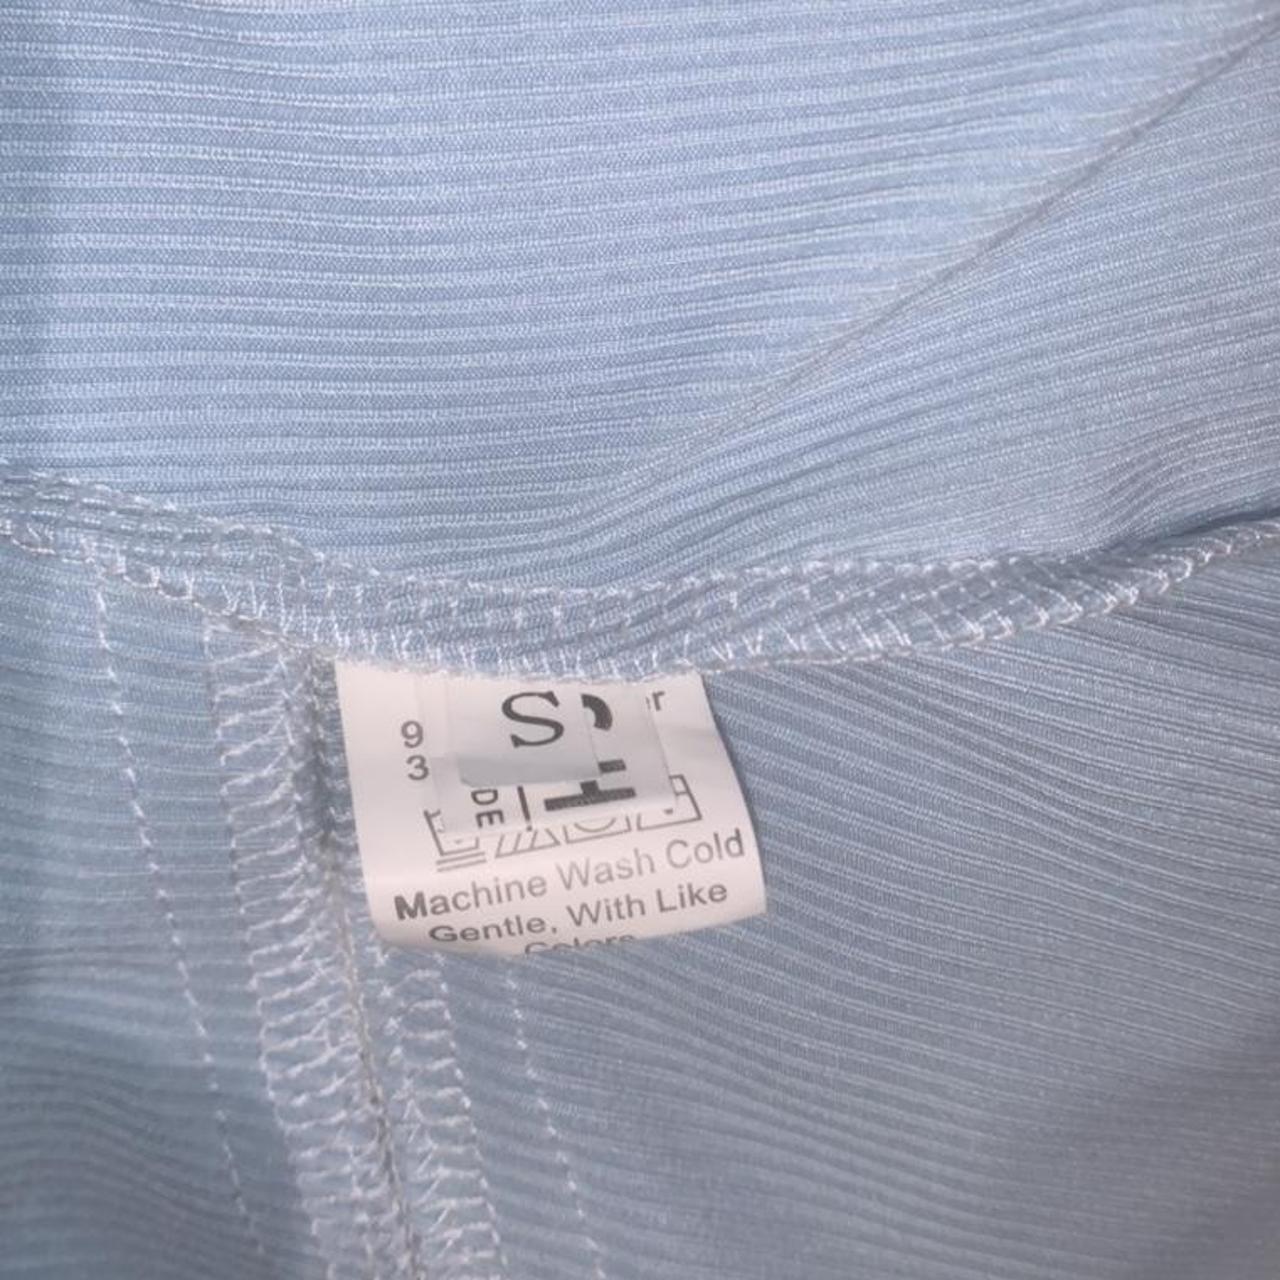 Shien blue lace crop top adjustable straps size... - Depop